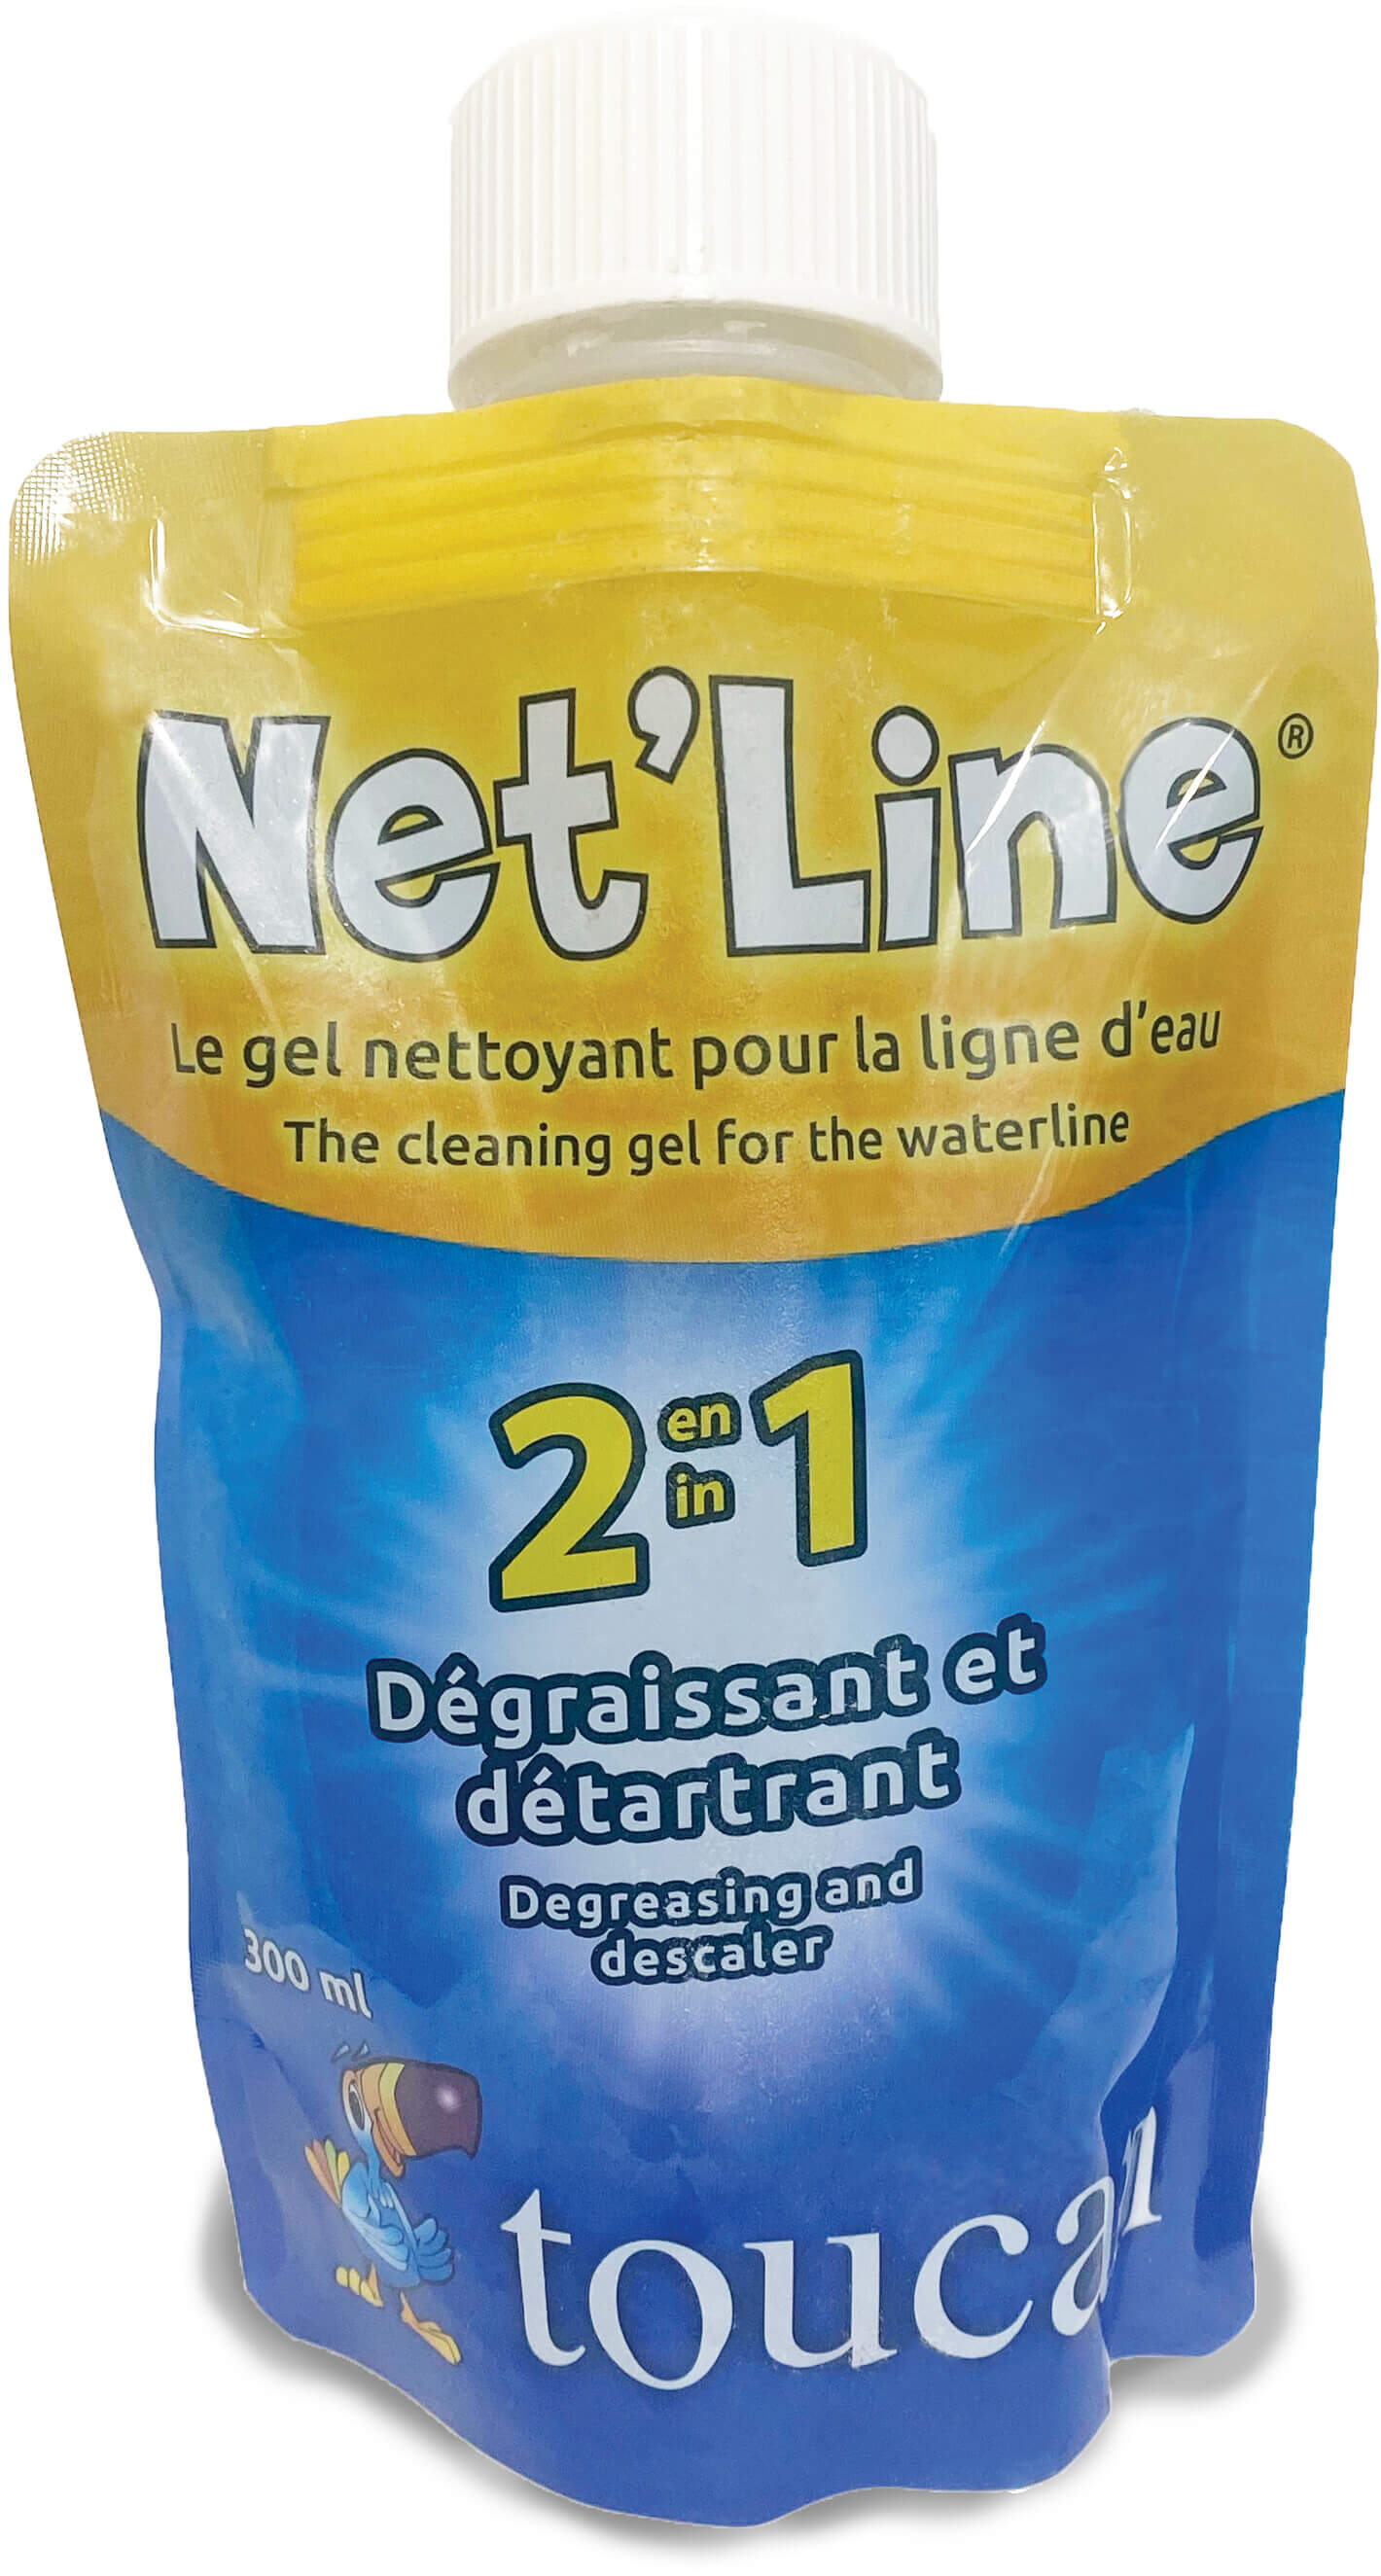 Net'line reinigungsgel für die wasserlinie type Label EN/FR